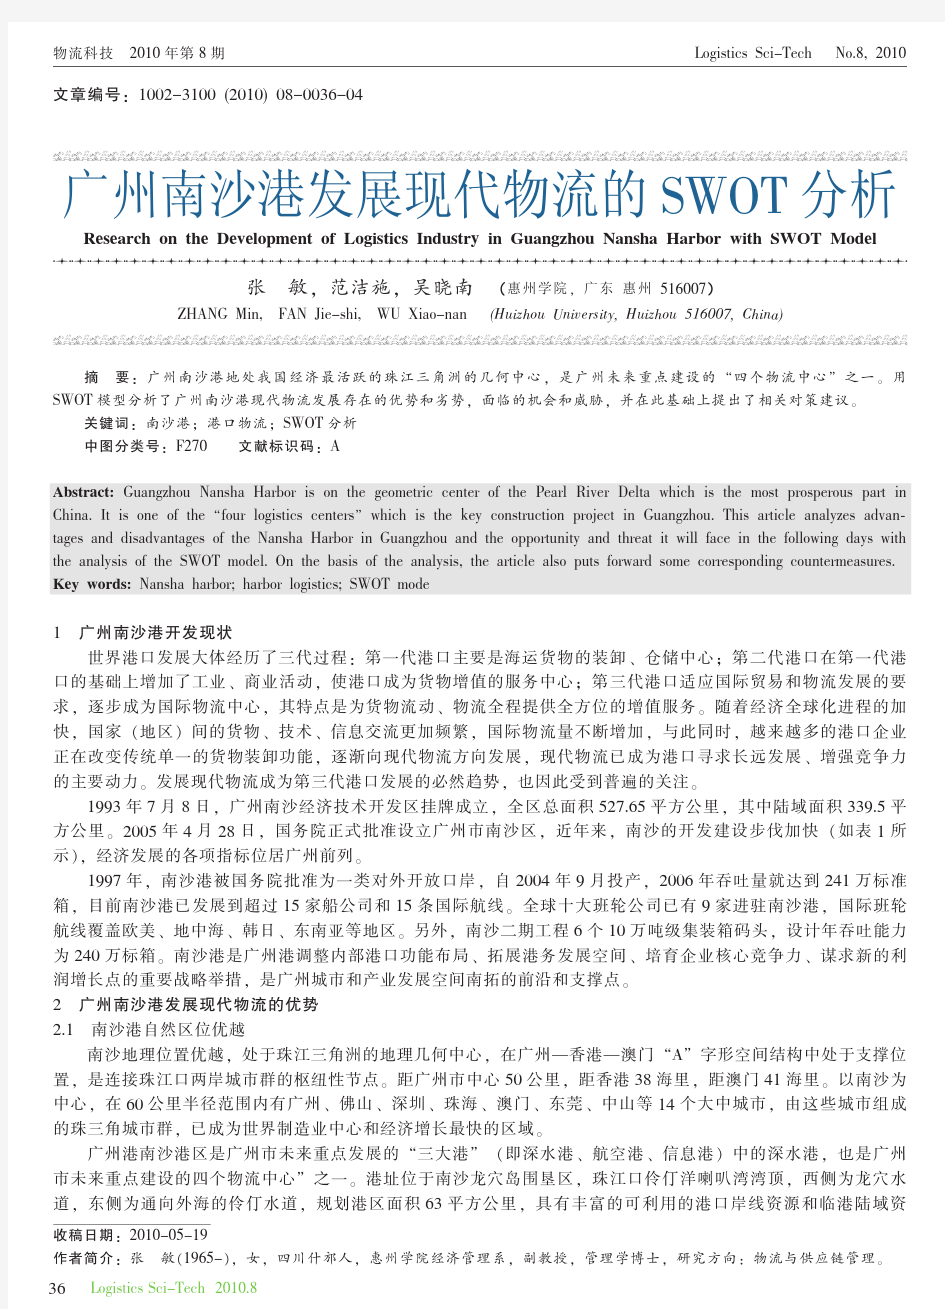 广州南沙港发展现代物流的SWOT分析